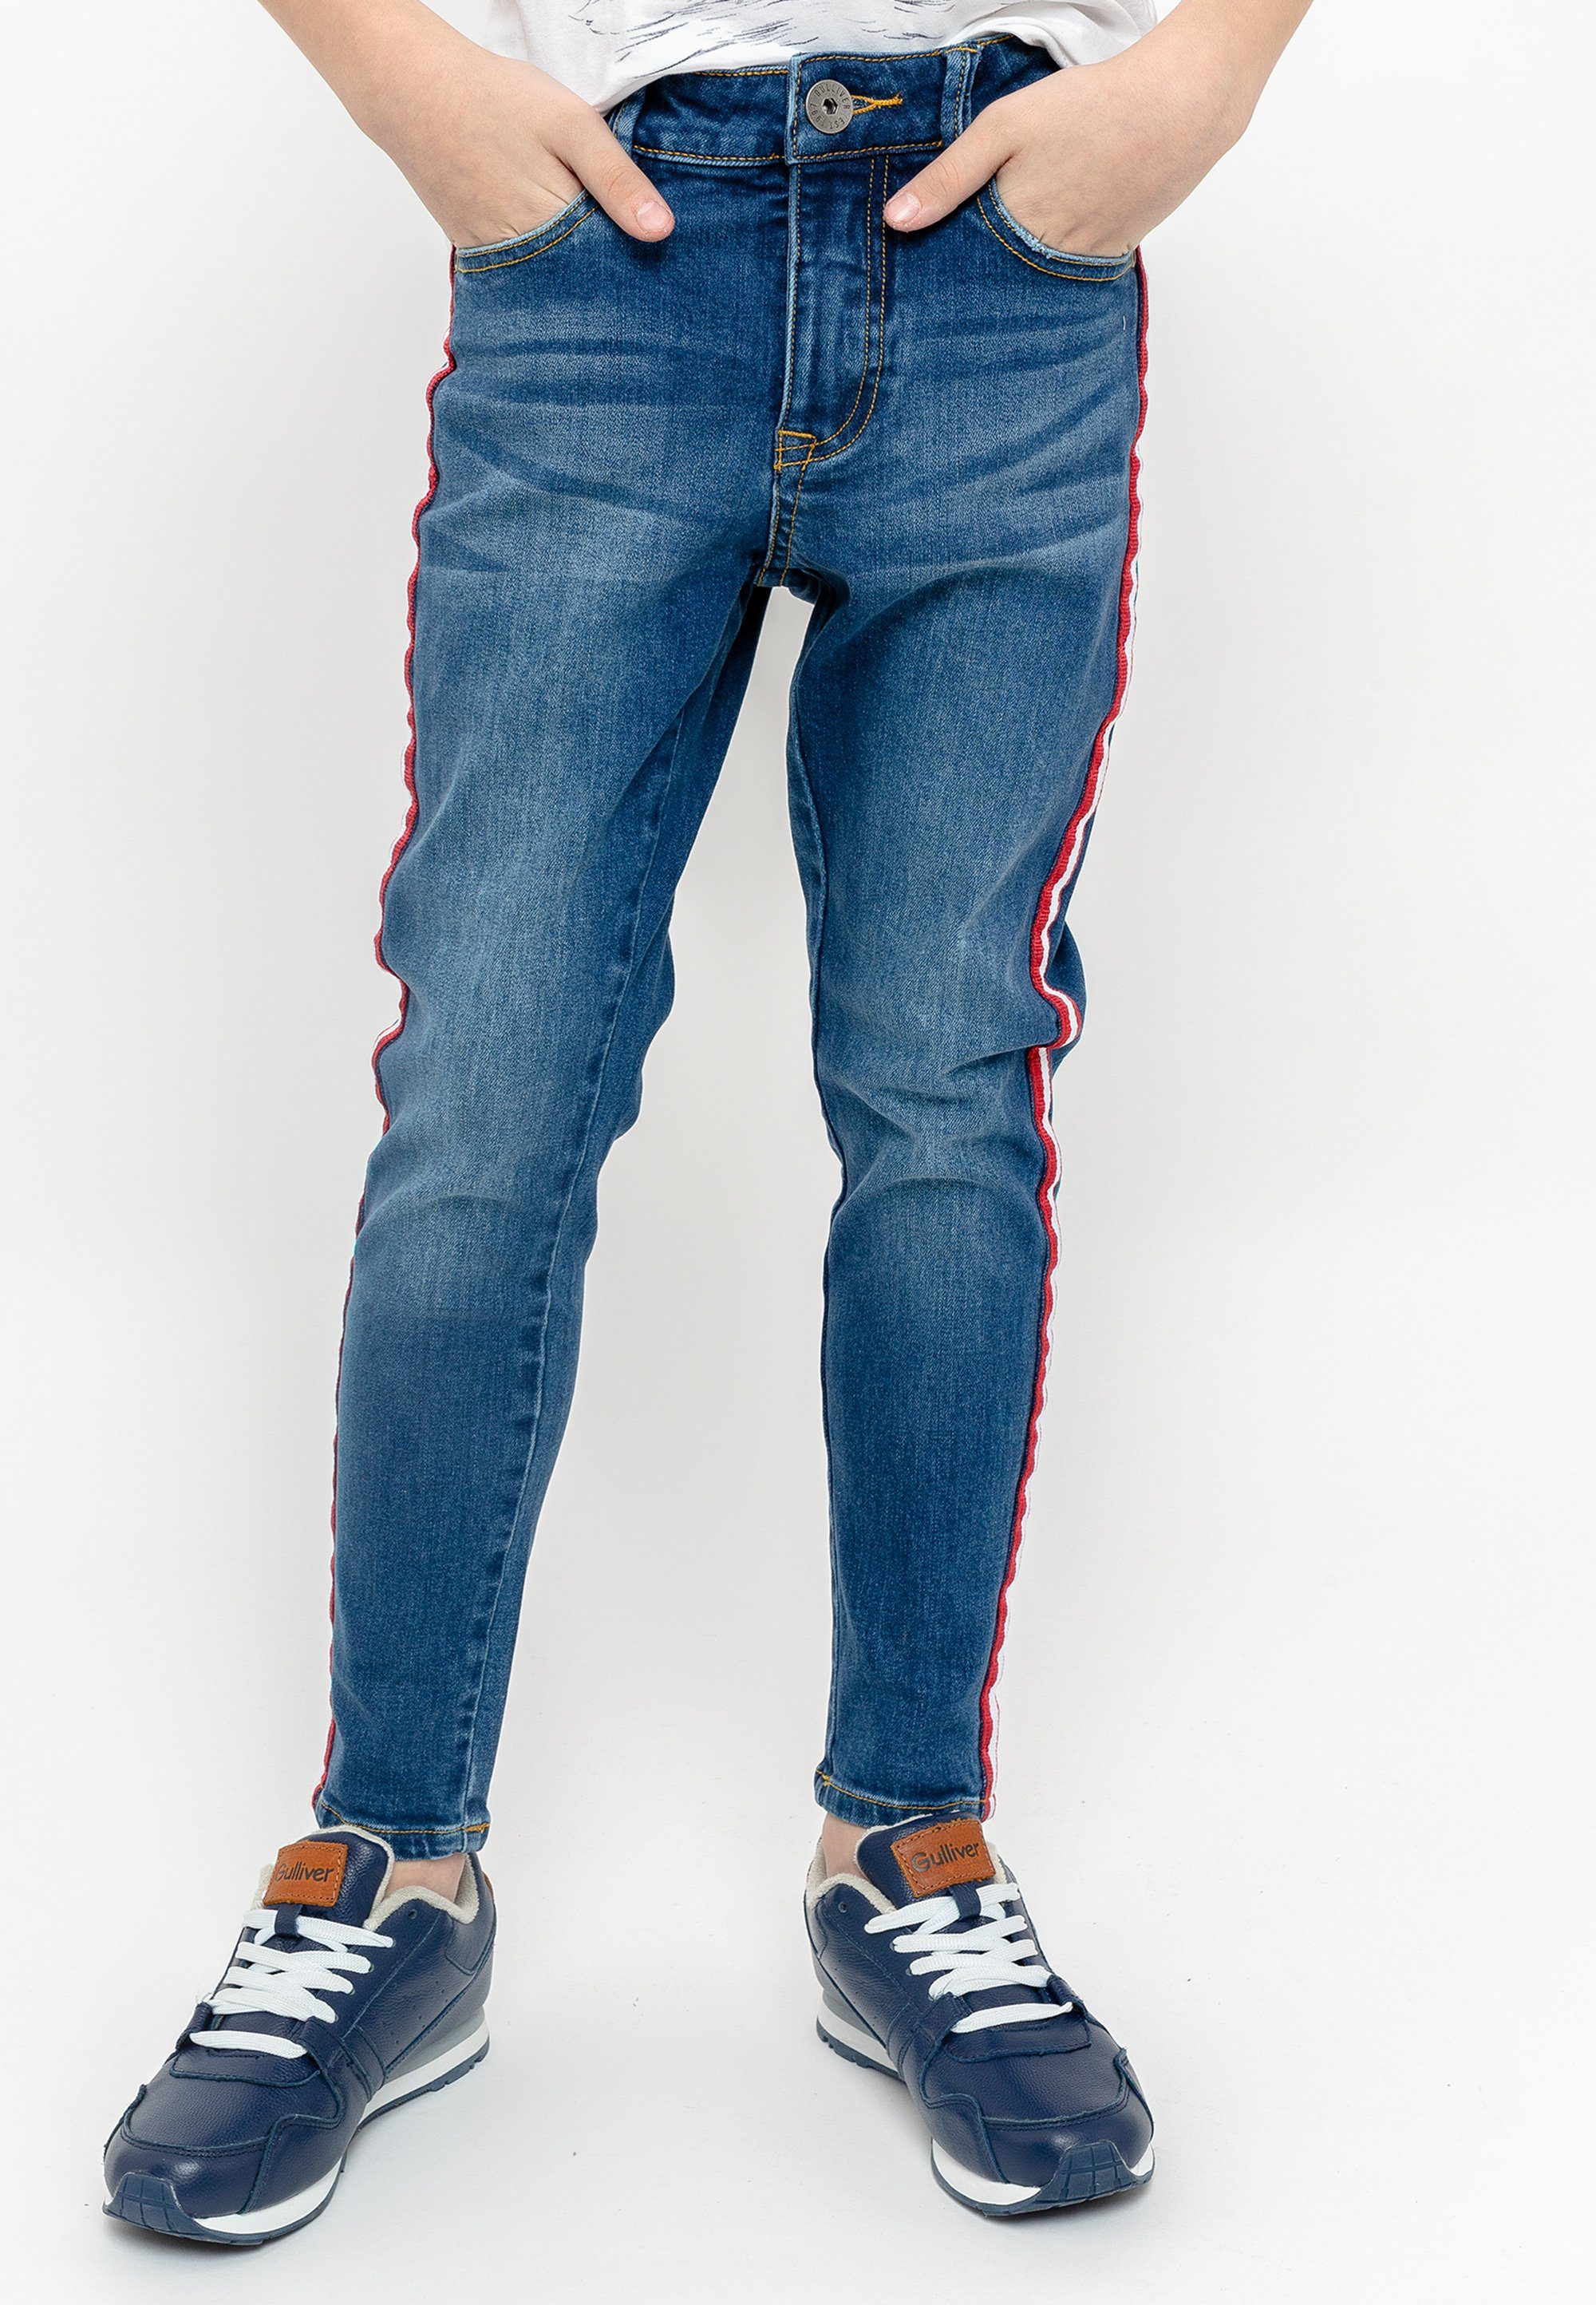 Gulliver Bequeme Jeans Casual Denim Hose mit kontrast Seitenstreifen